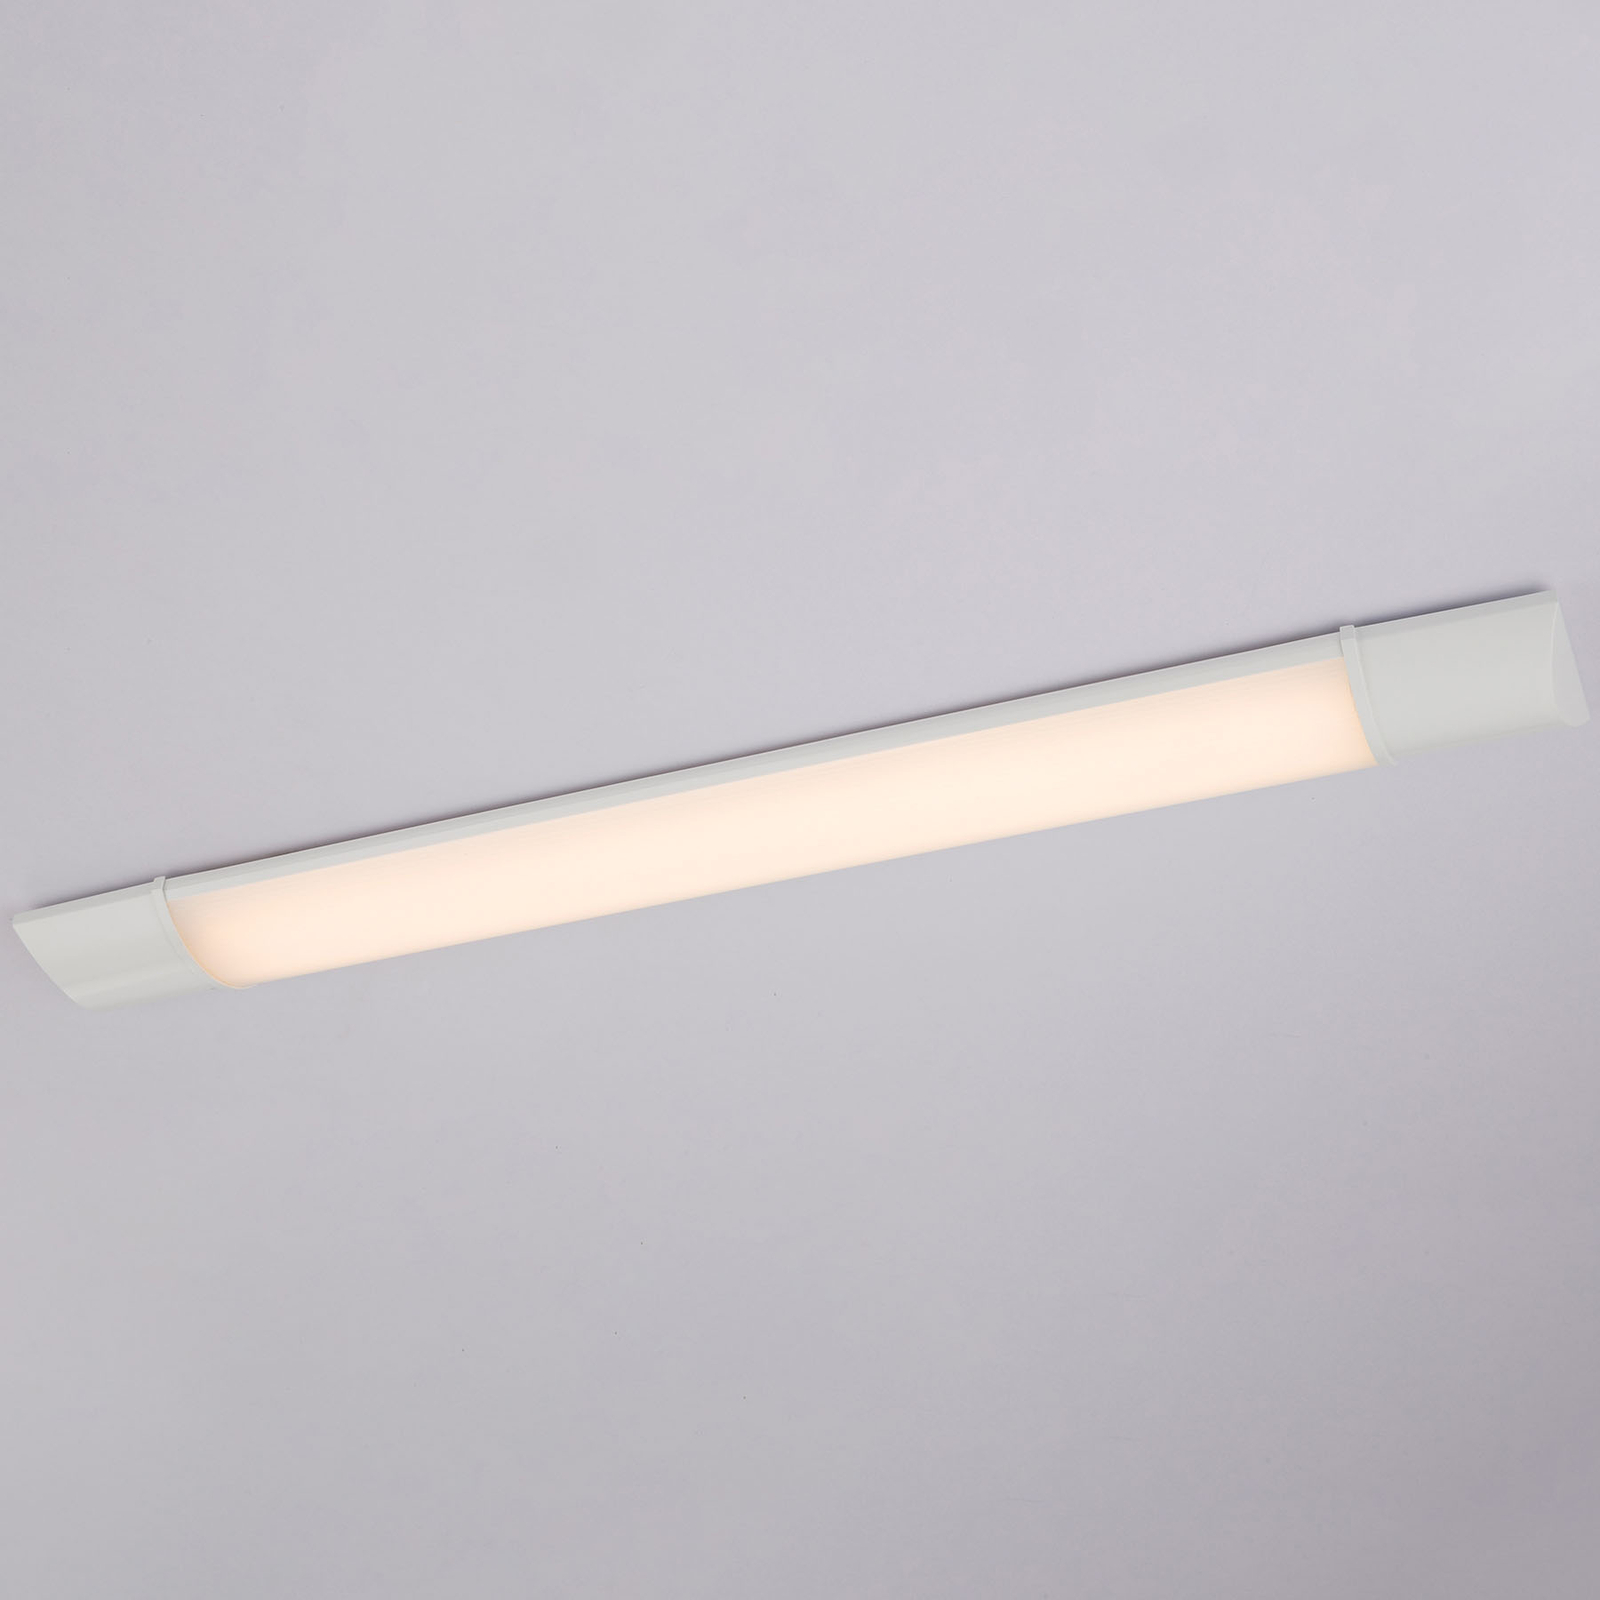 LED meubelverlichting Obara, IP20, 60 cm lang